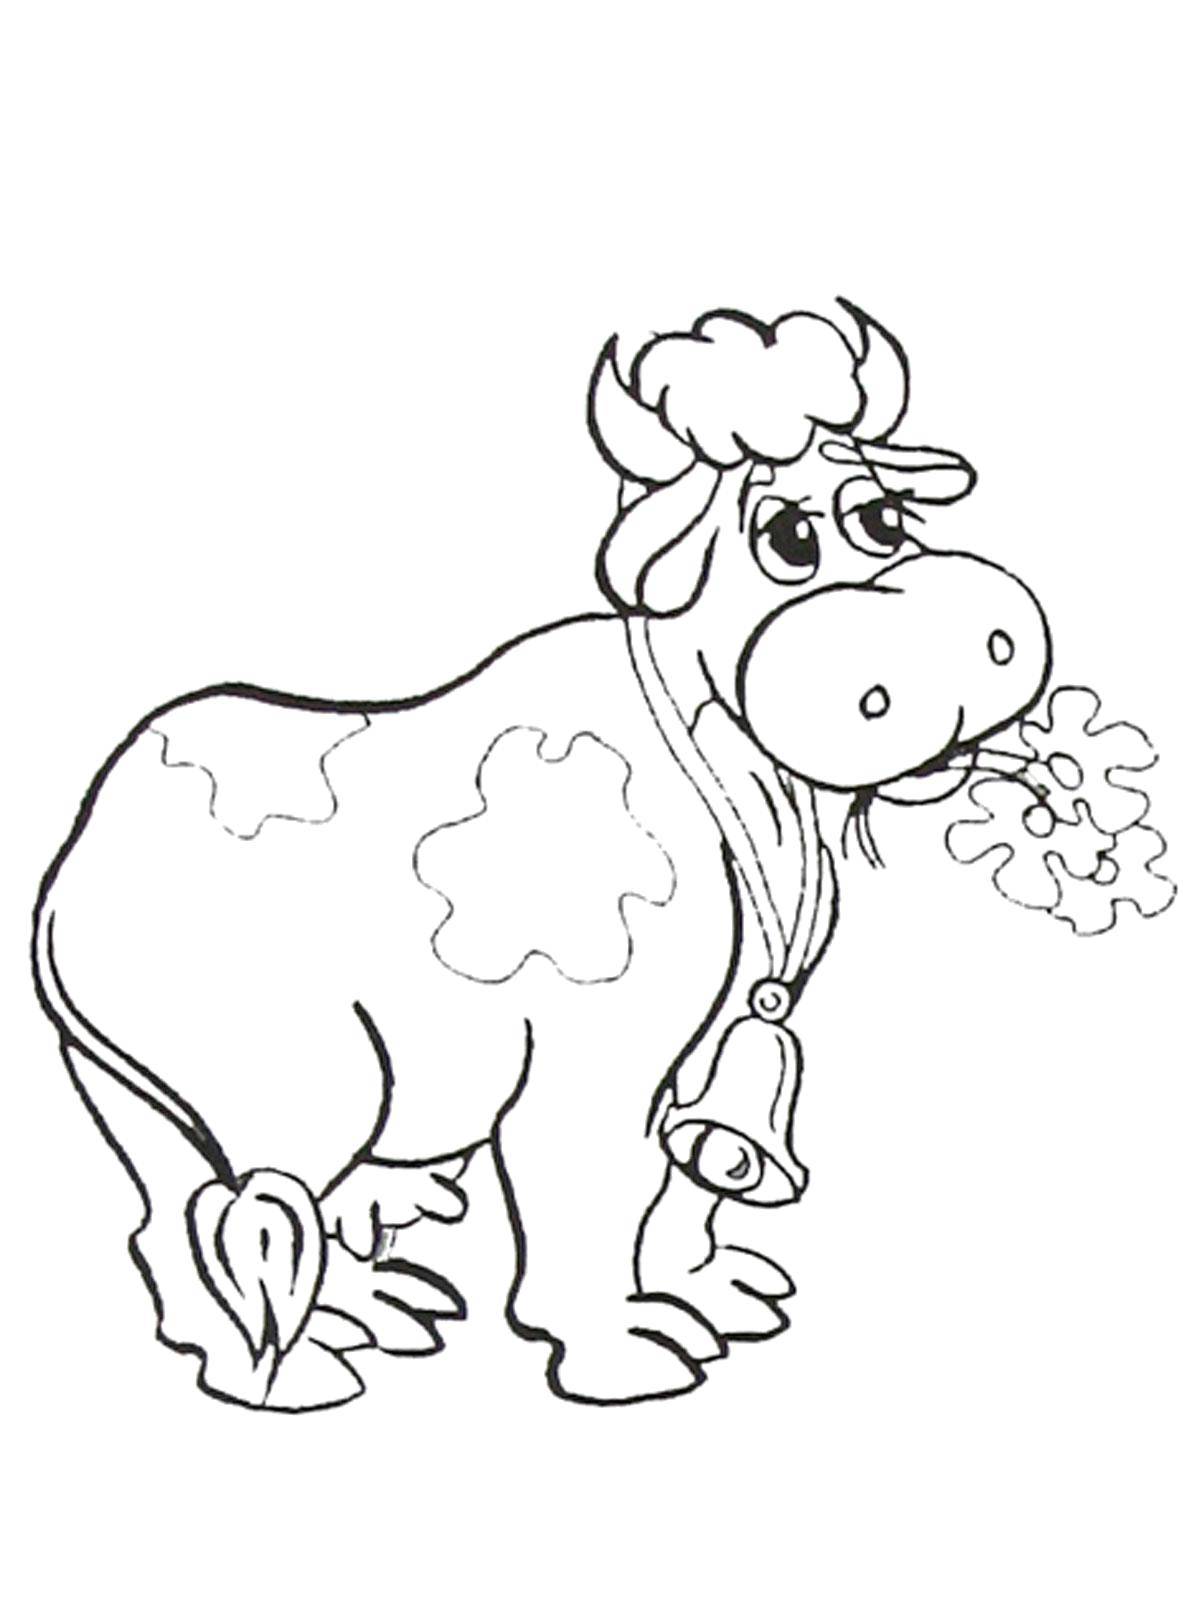 Раскраска коровы для детей (животные, корова)